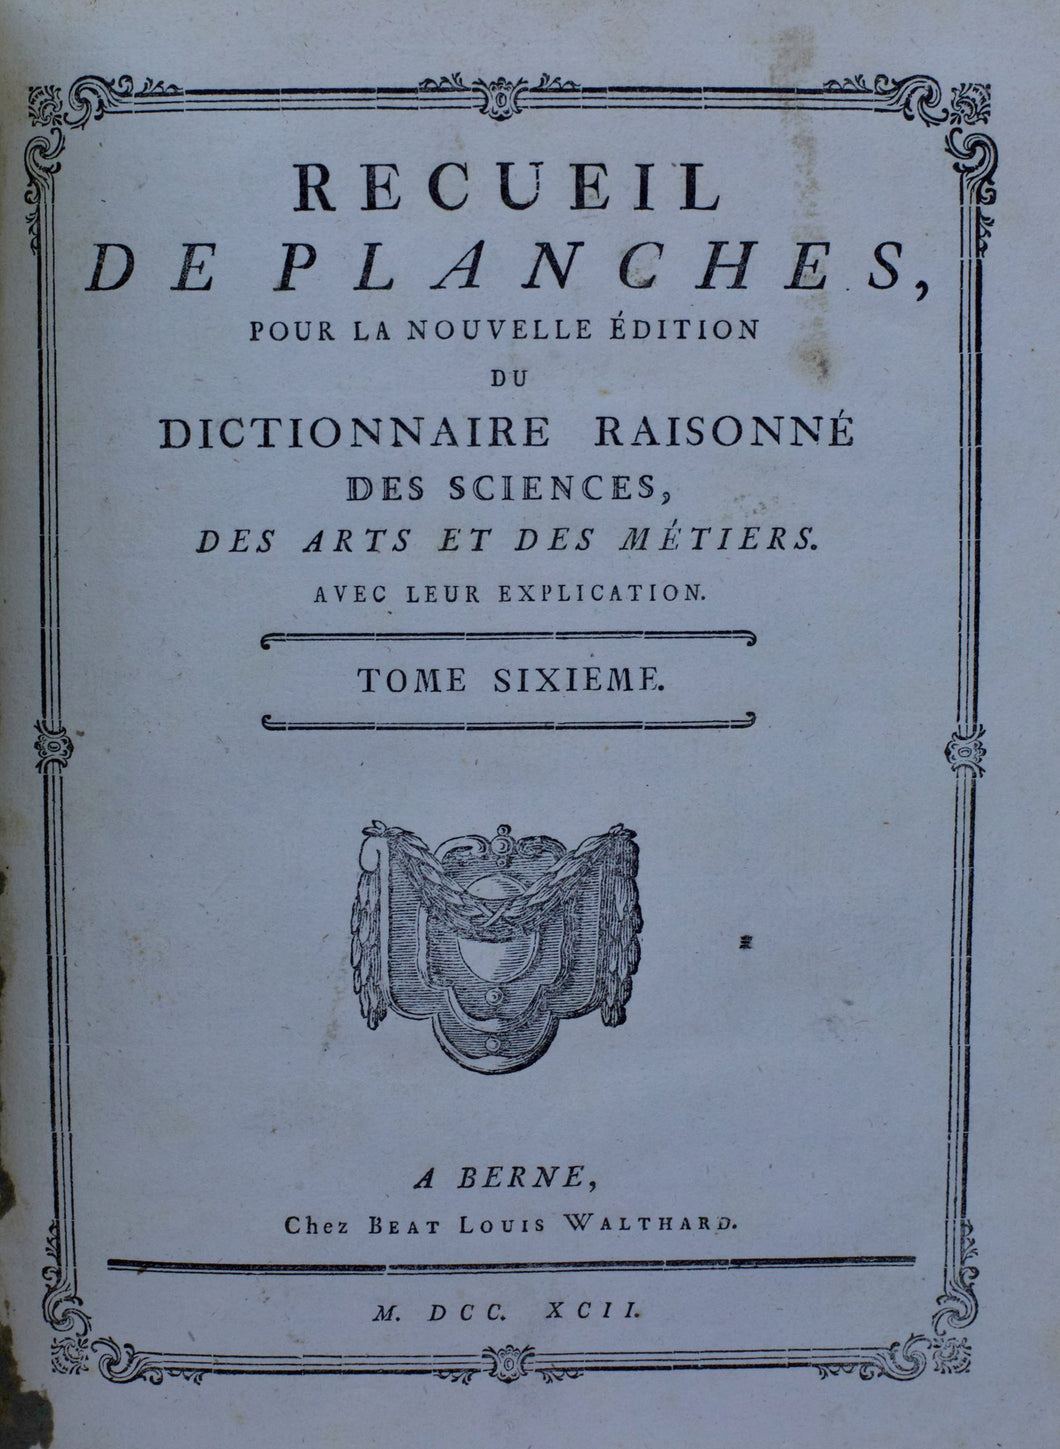 Recueil de planches, pour la nouvelle édition du Dictionnaire raisonné des Sciences, des Arts et des Métiers